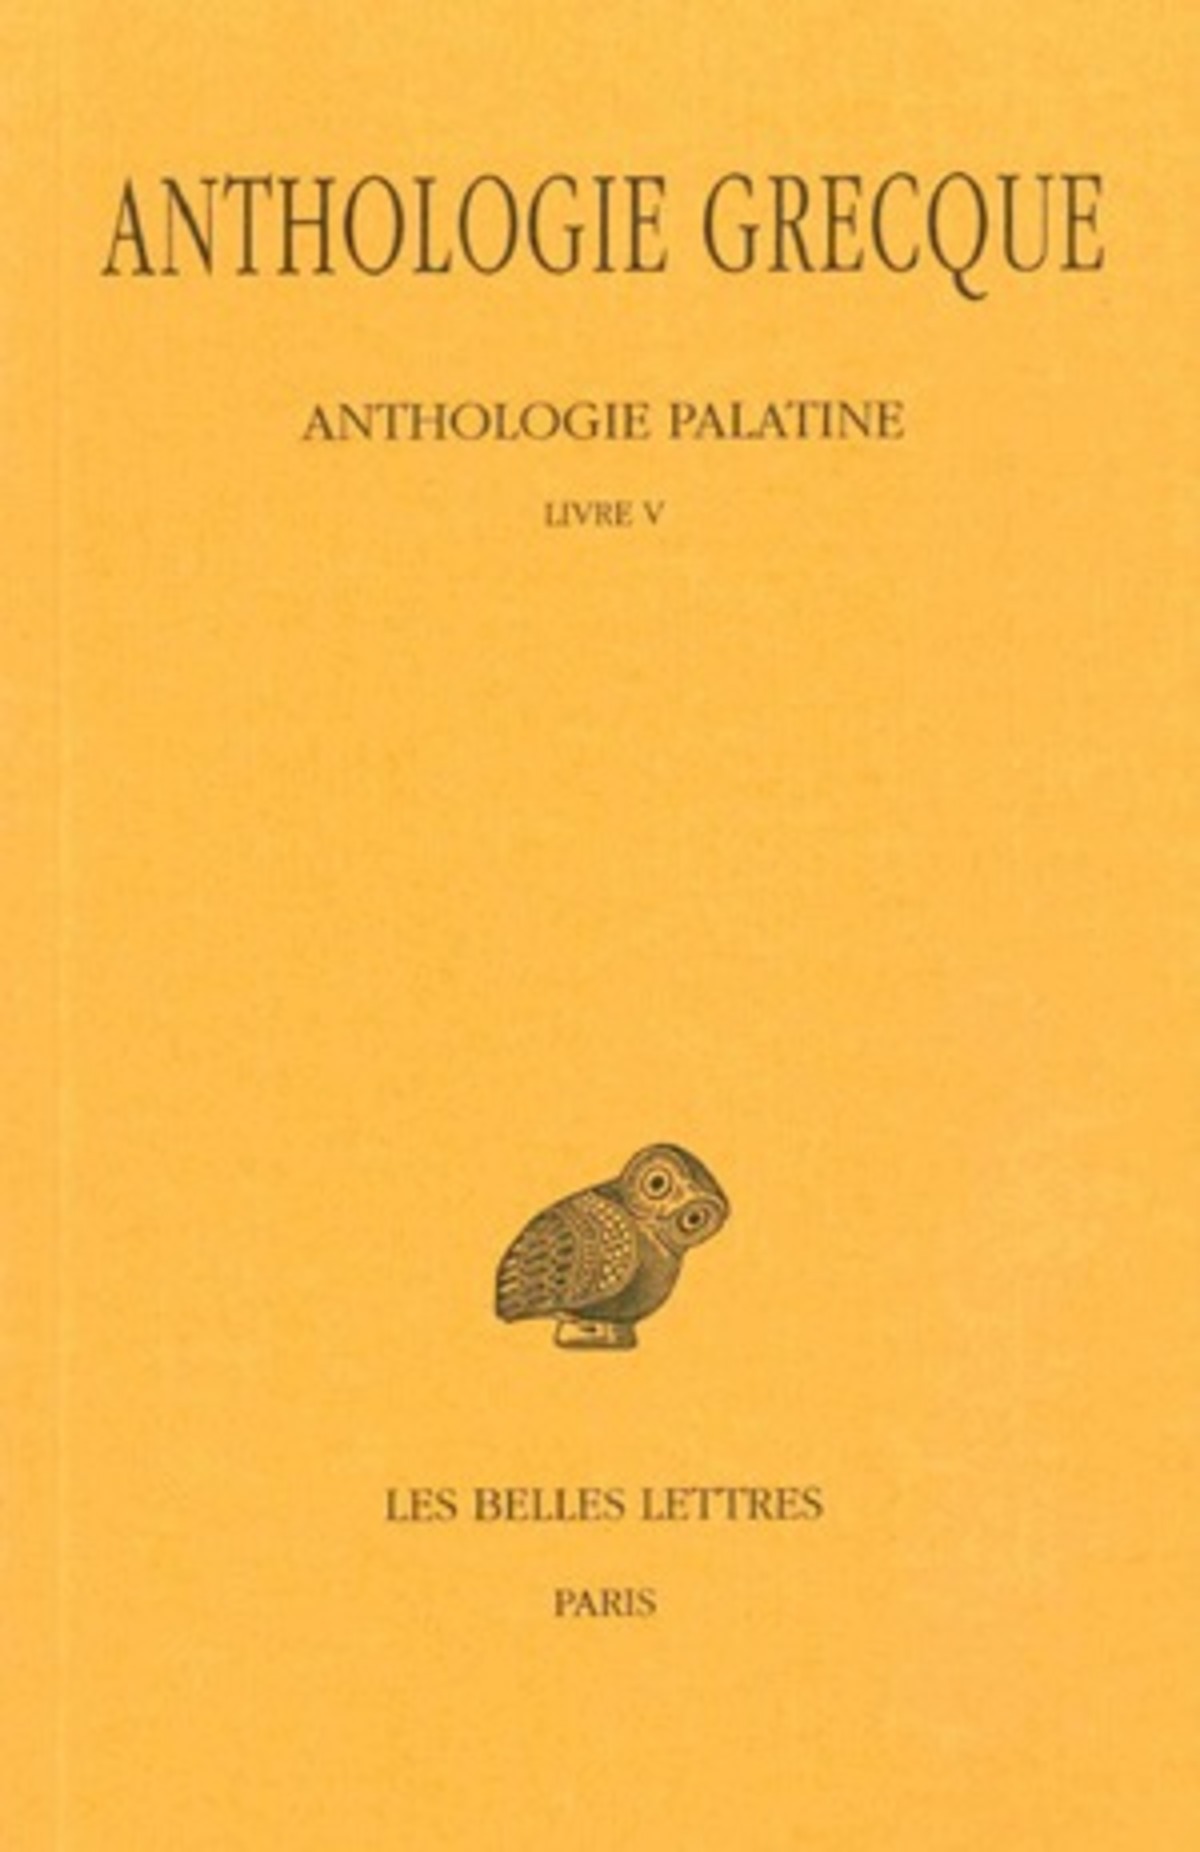 Anthologie grecque. Tome II : Anthologie palatine, Livre V